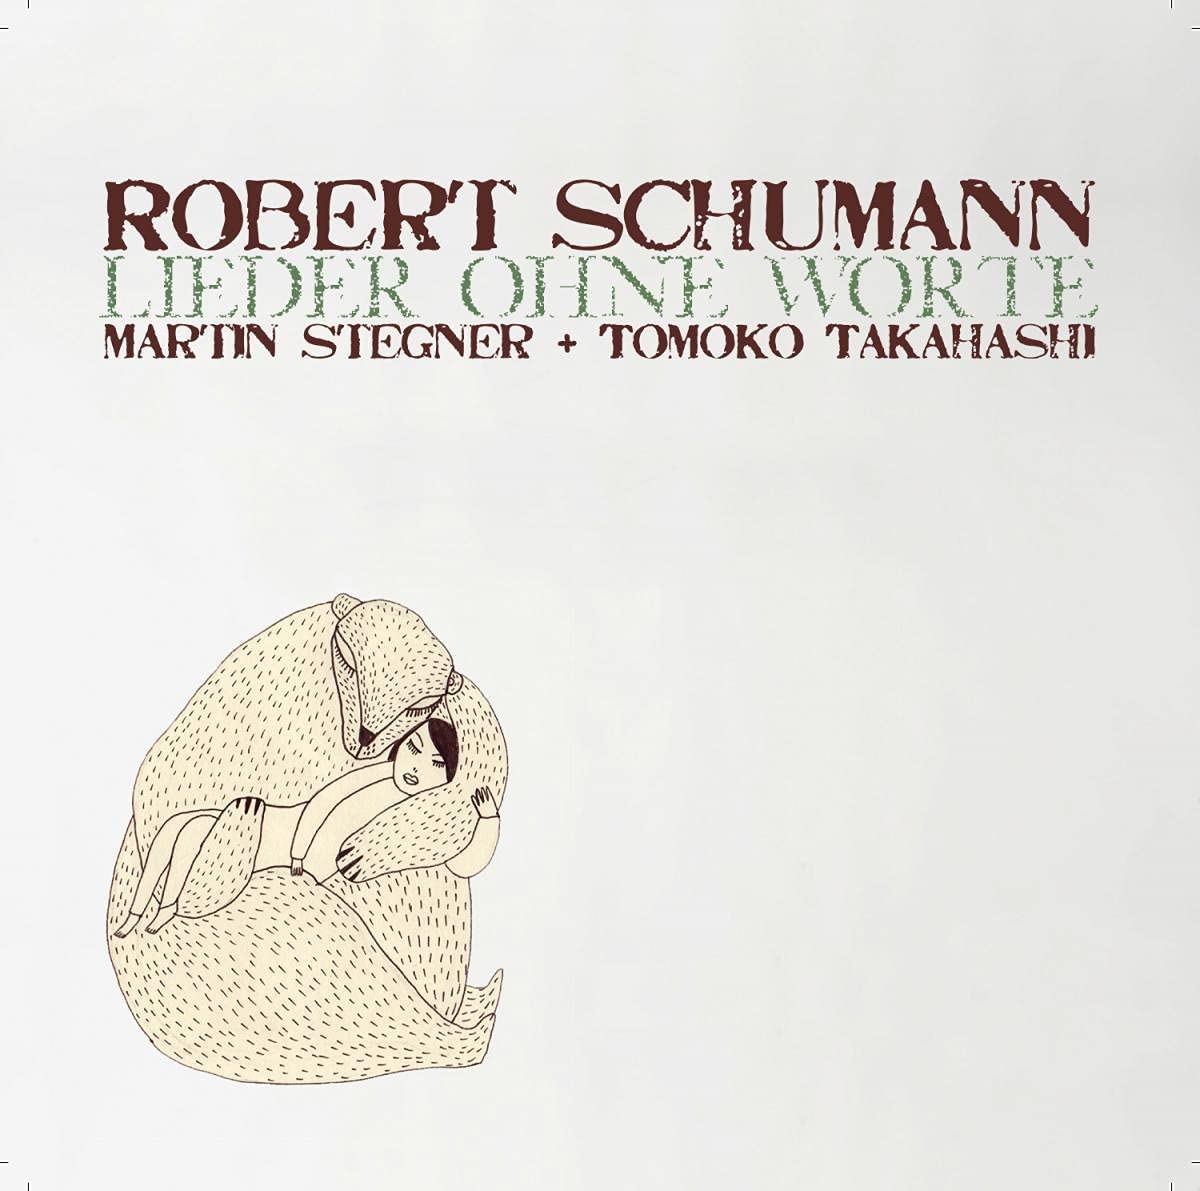 Lieder Ohne Worte [Audio CD] R. Schumann, Martin Stegner, Tomoko Takahashi and Robert Schumann